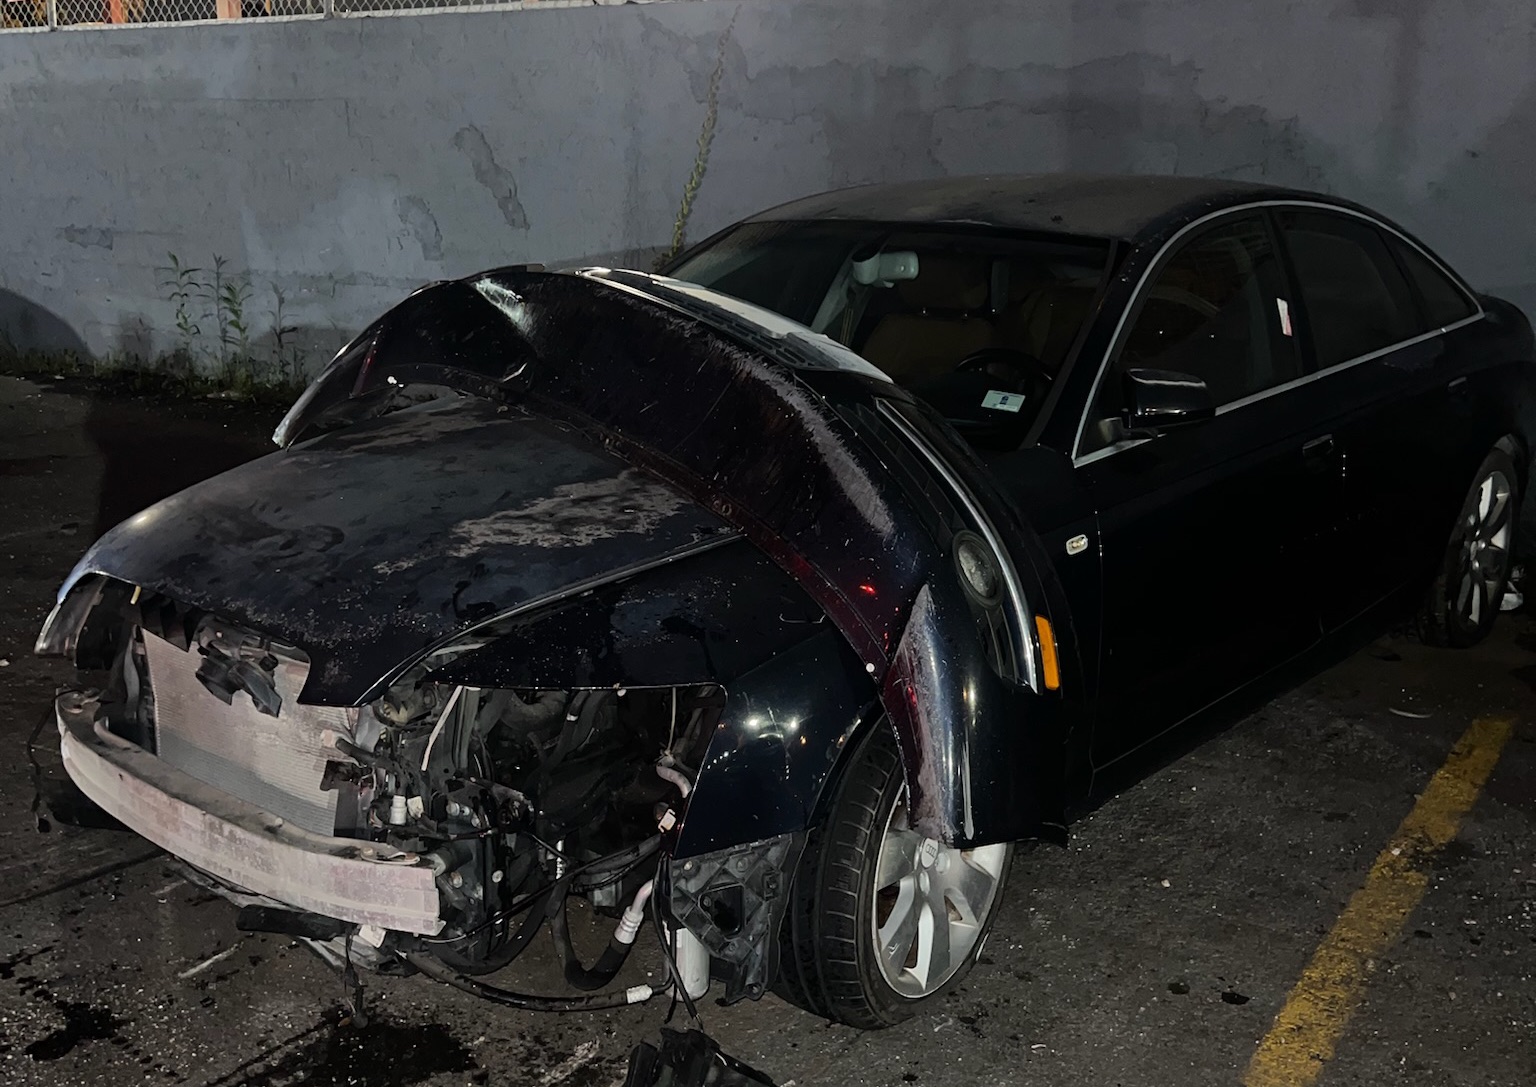 Car scraped in South Florida